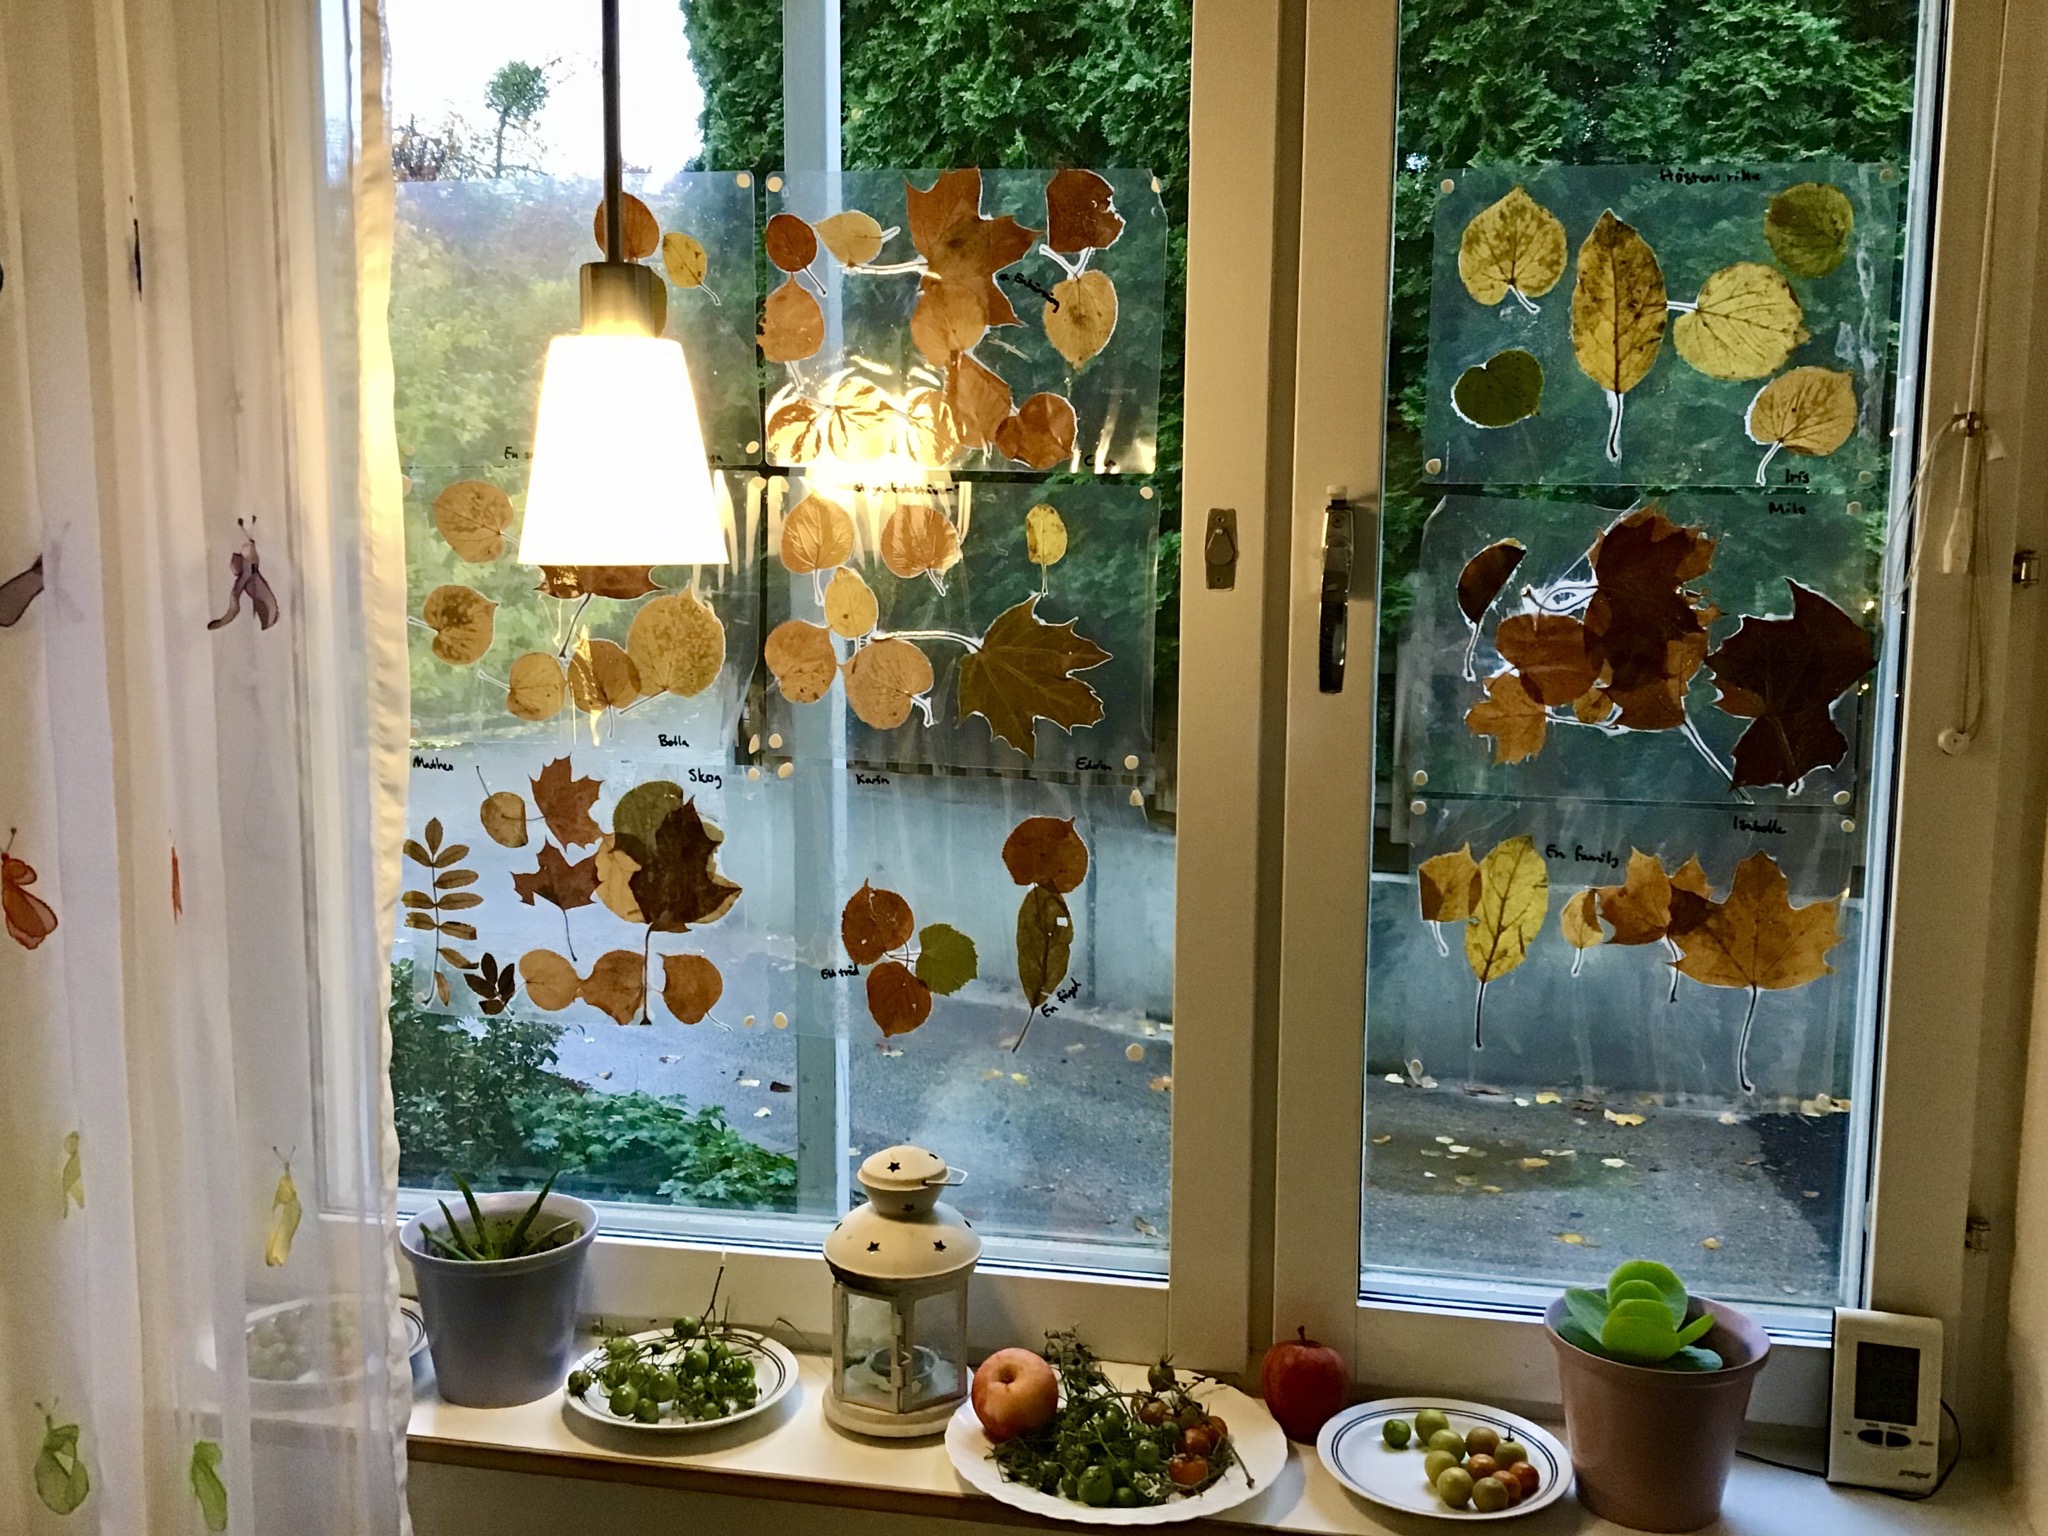 Lövkonst uppsatt på fönster, gröna tomater morgnar på fönsterbrädan